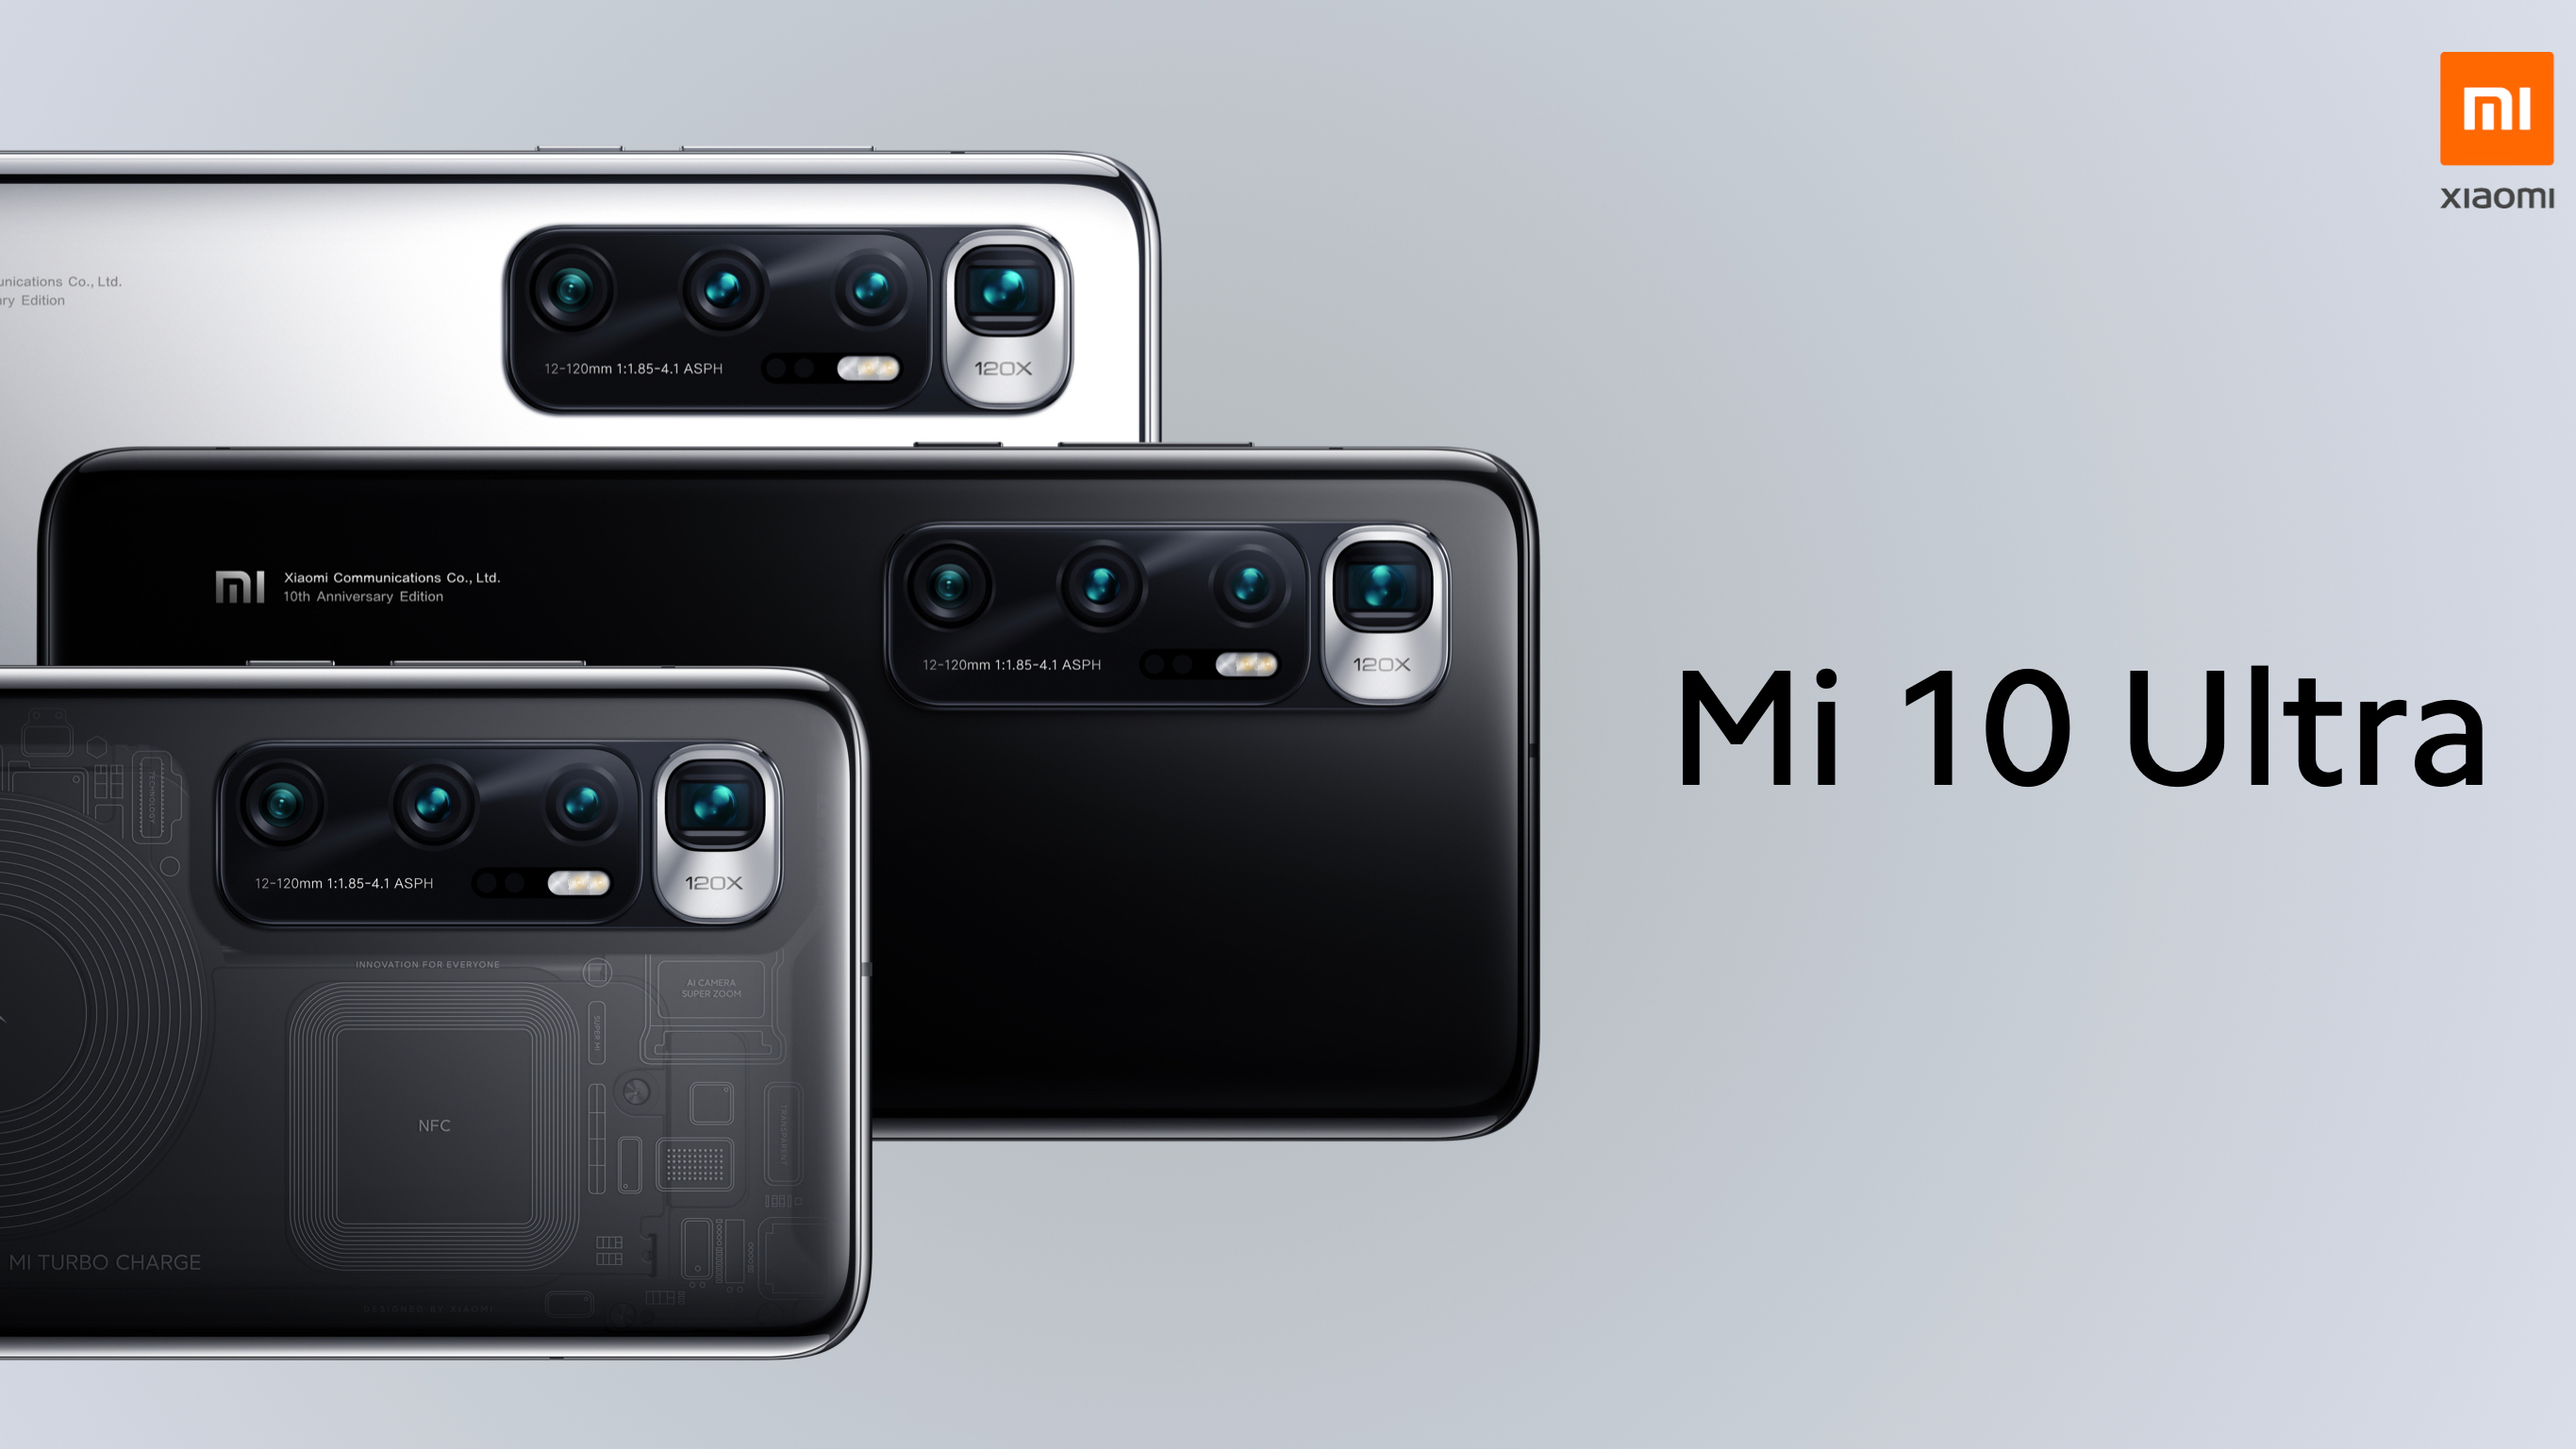 هل يستحق Xiaomi Mi 10 Ultra لقب أفضل هاتف أندرويد في العالم ؟